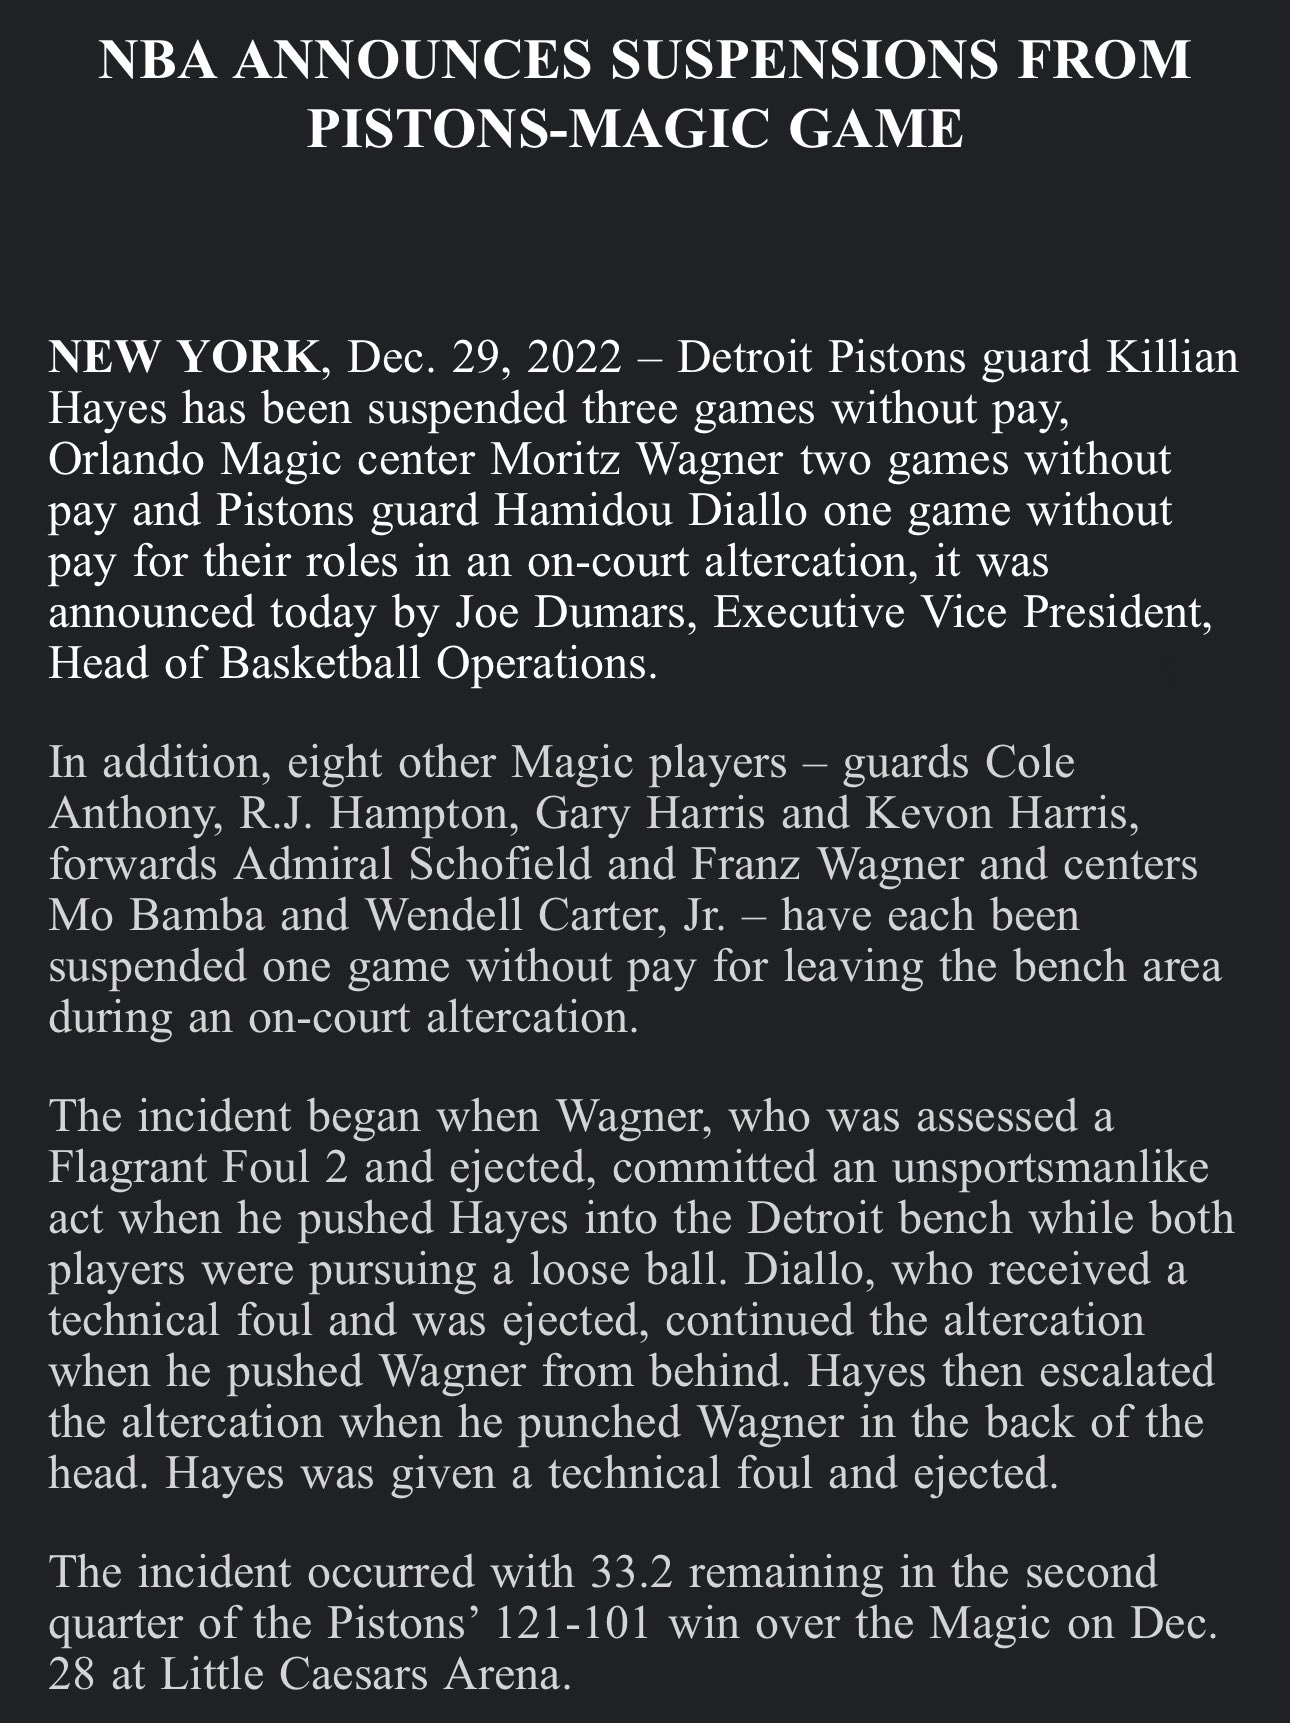 NBA treo giò 11 cầu thủ sau vụ xô xát giữa Pistons và Magic - Ảnh 1.